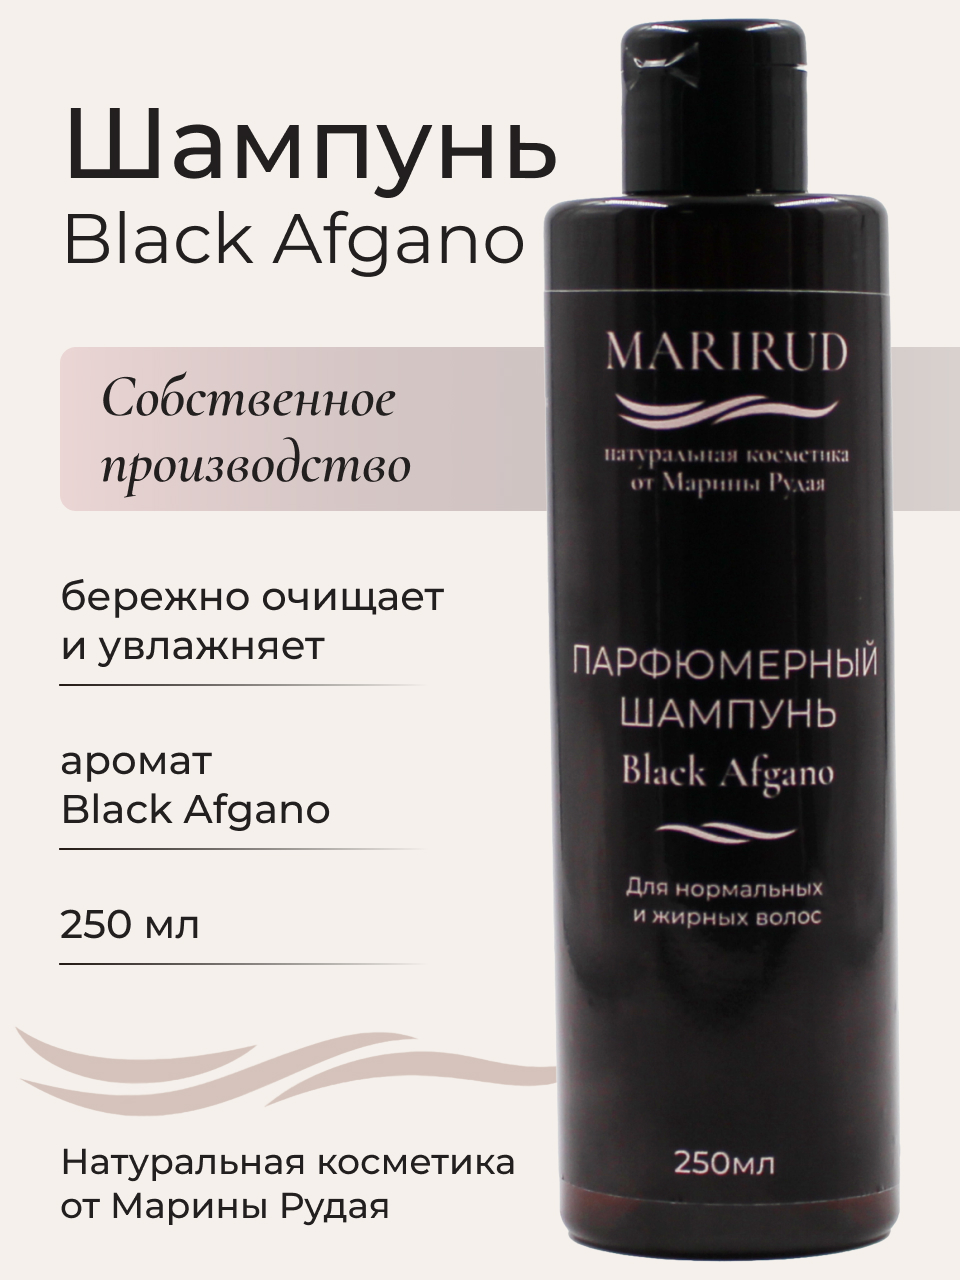 Набор парфюмерный- Шампуни Black Afgano и Tobacco Vanille набор шампуней для волос deoproce с зеленым чаем и хной 200 мл х 2 шт